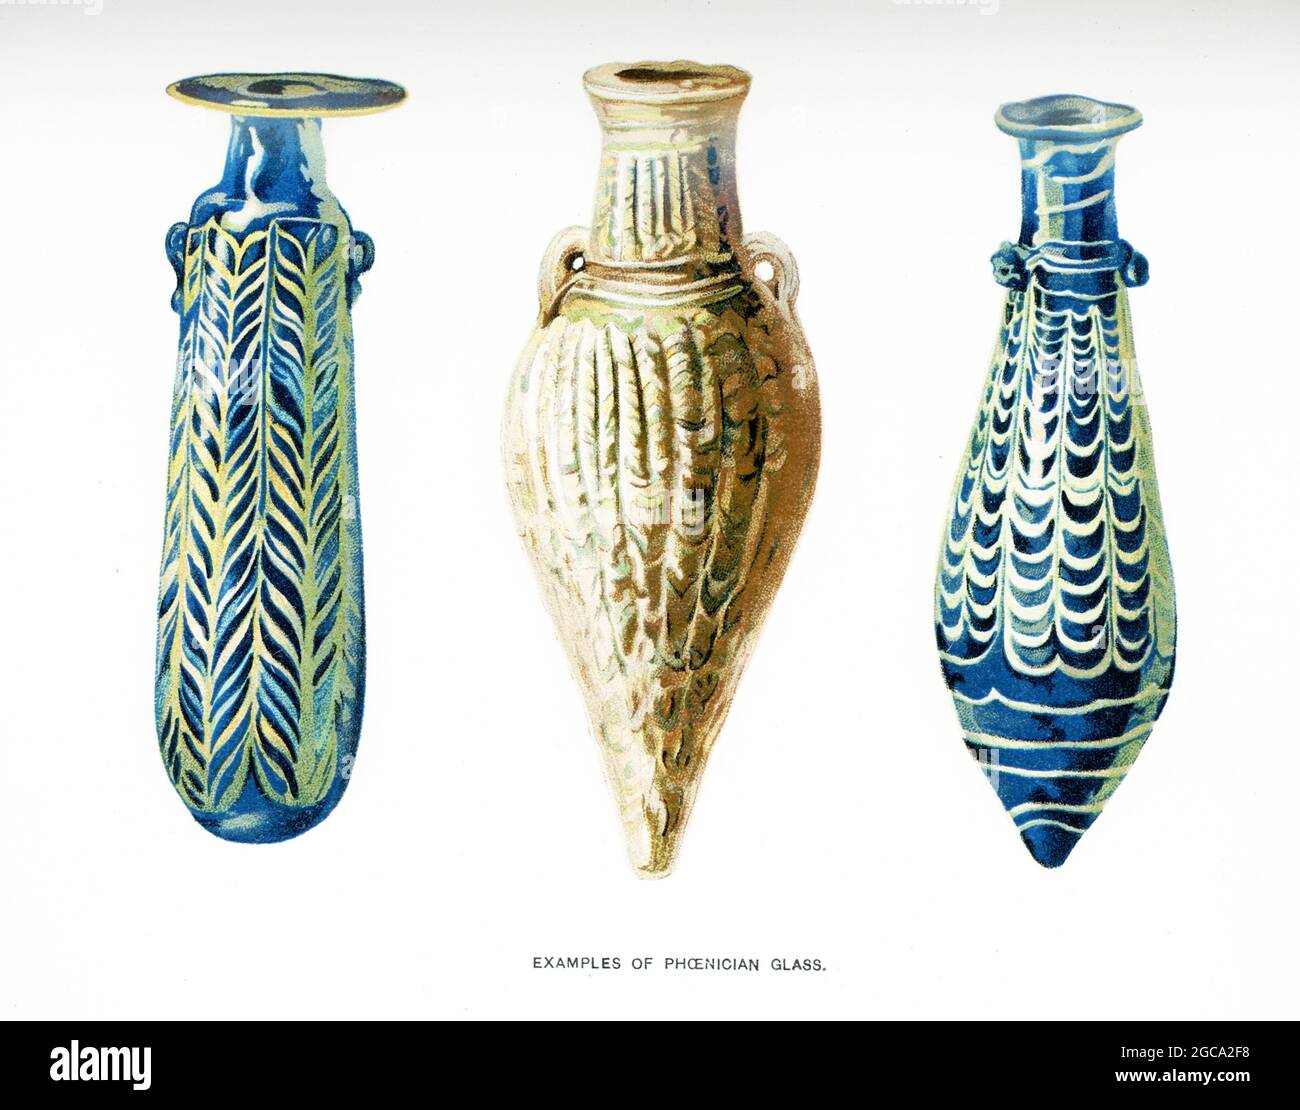 Die Bildunterschrift zu dieser Illustration von 1903 in Gaston Masperos Buch über die Geschichte Ägyptens lautet: „Beispiele phönizischen Glases“. Stockfoto